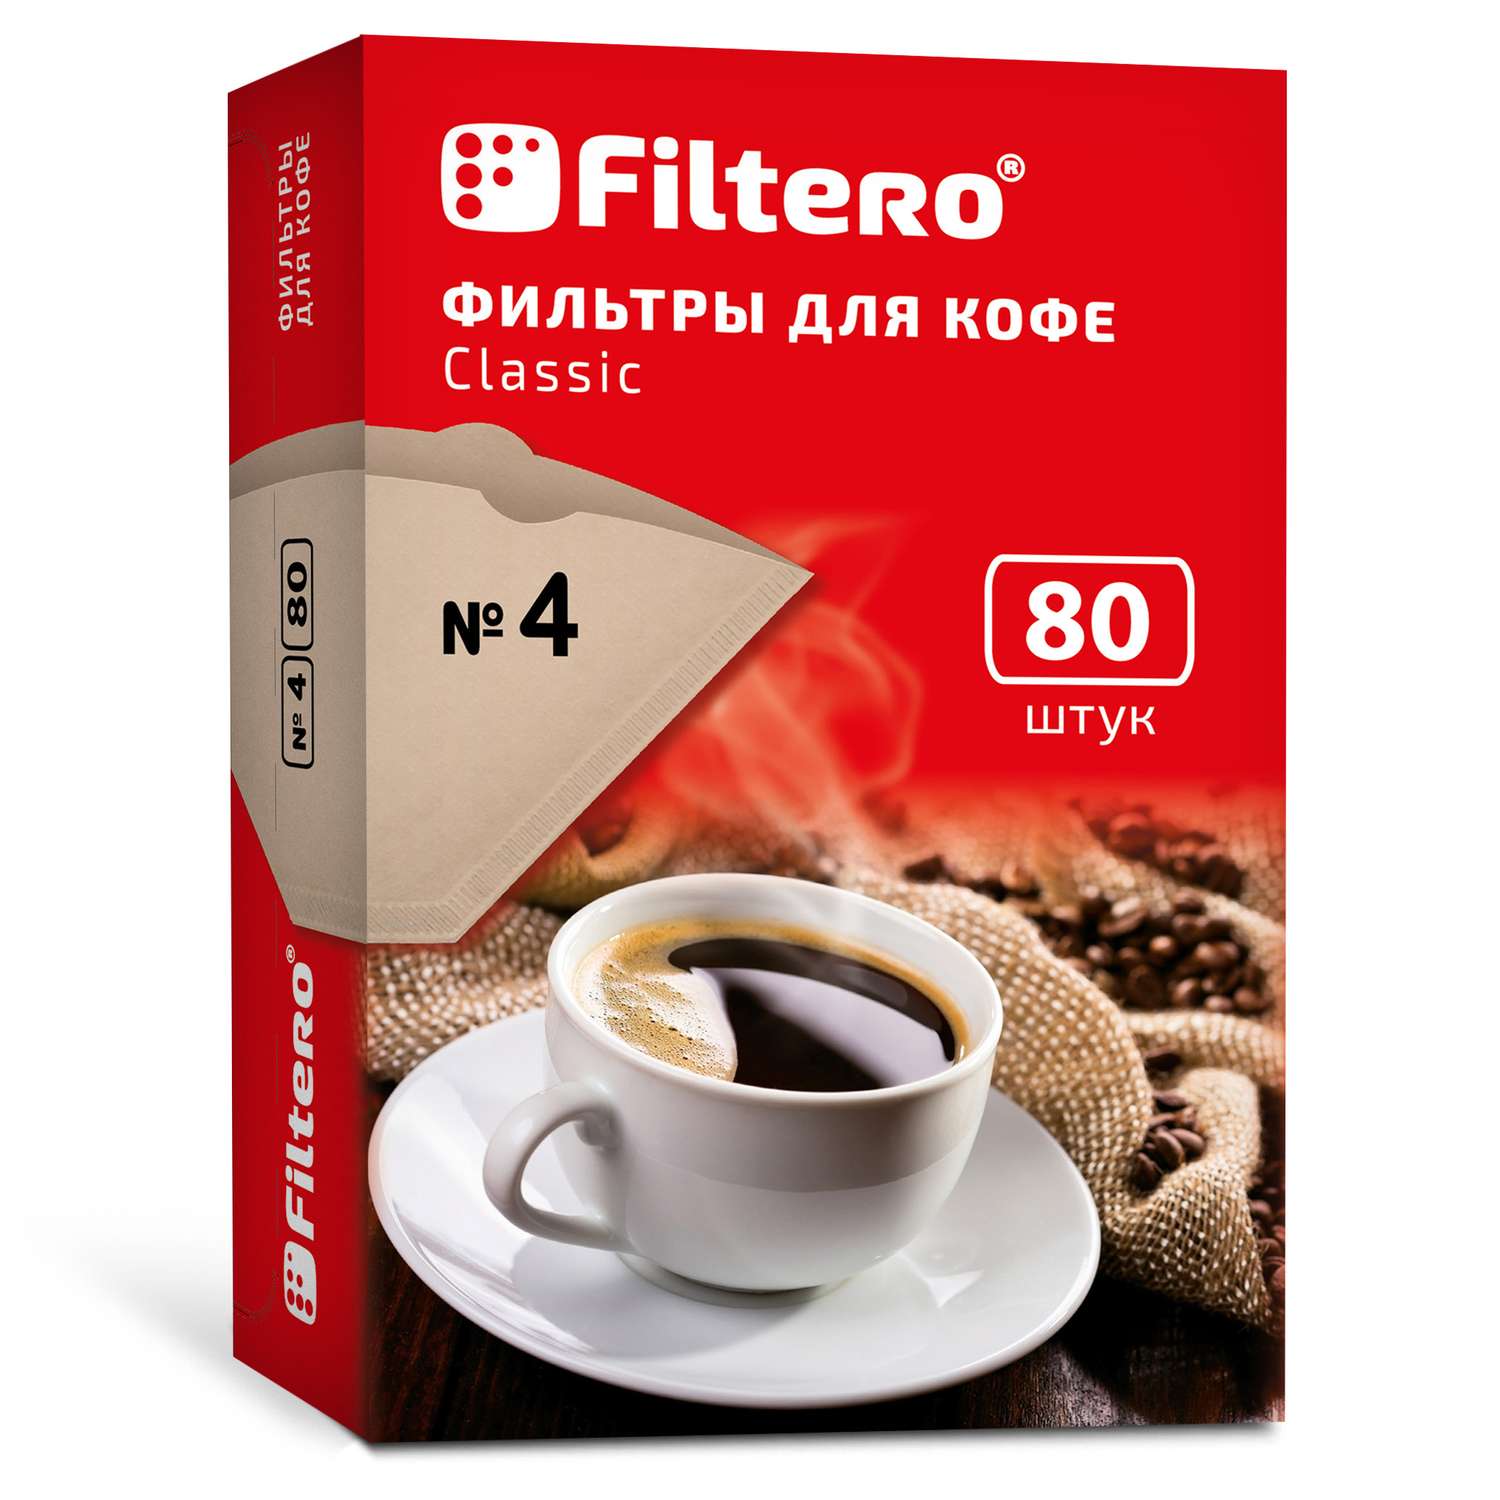 Фильтры для кофеварки Filtero №4/80 коричневые Classic - фото 1